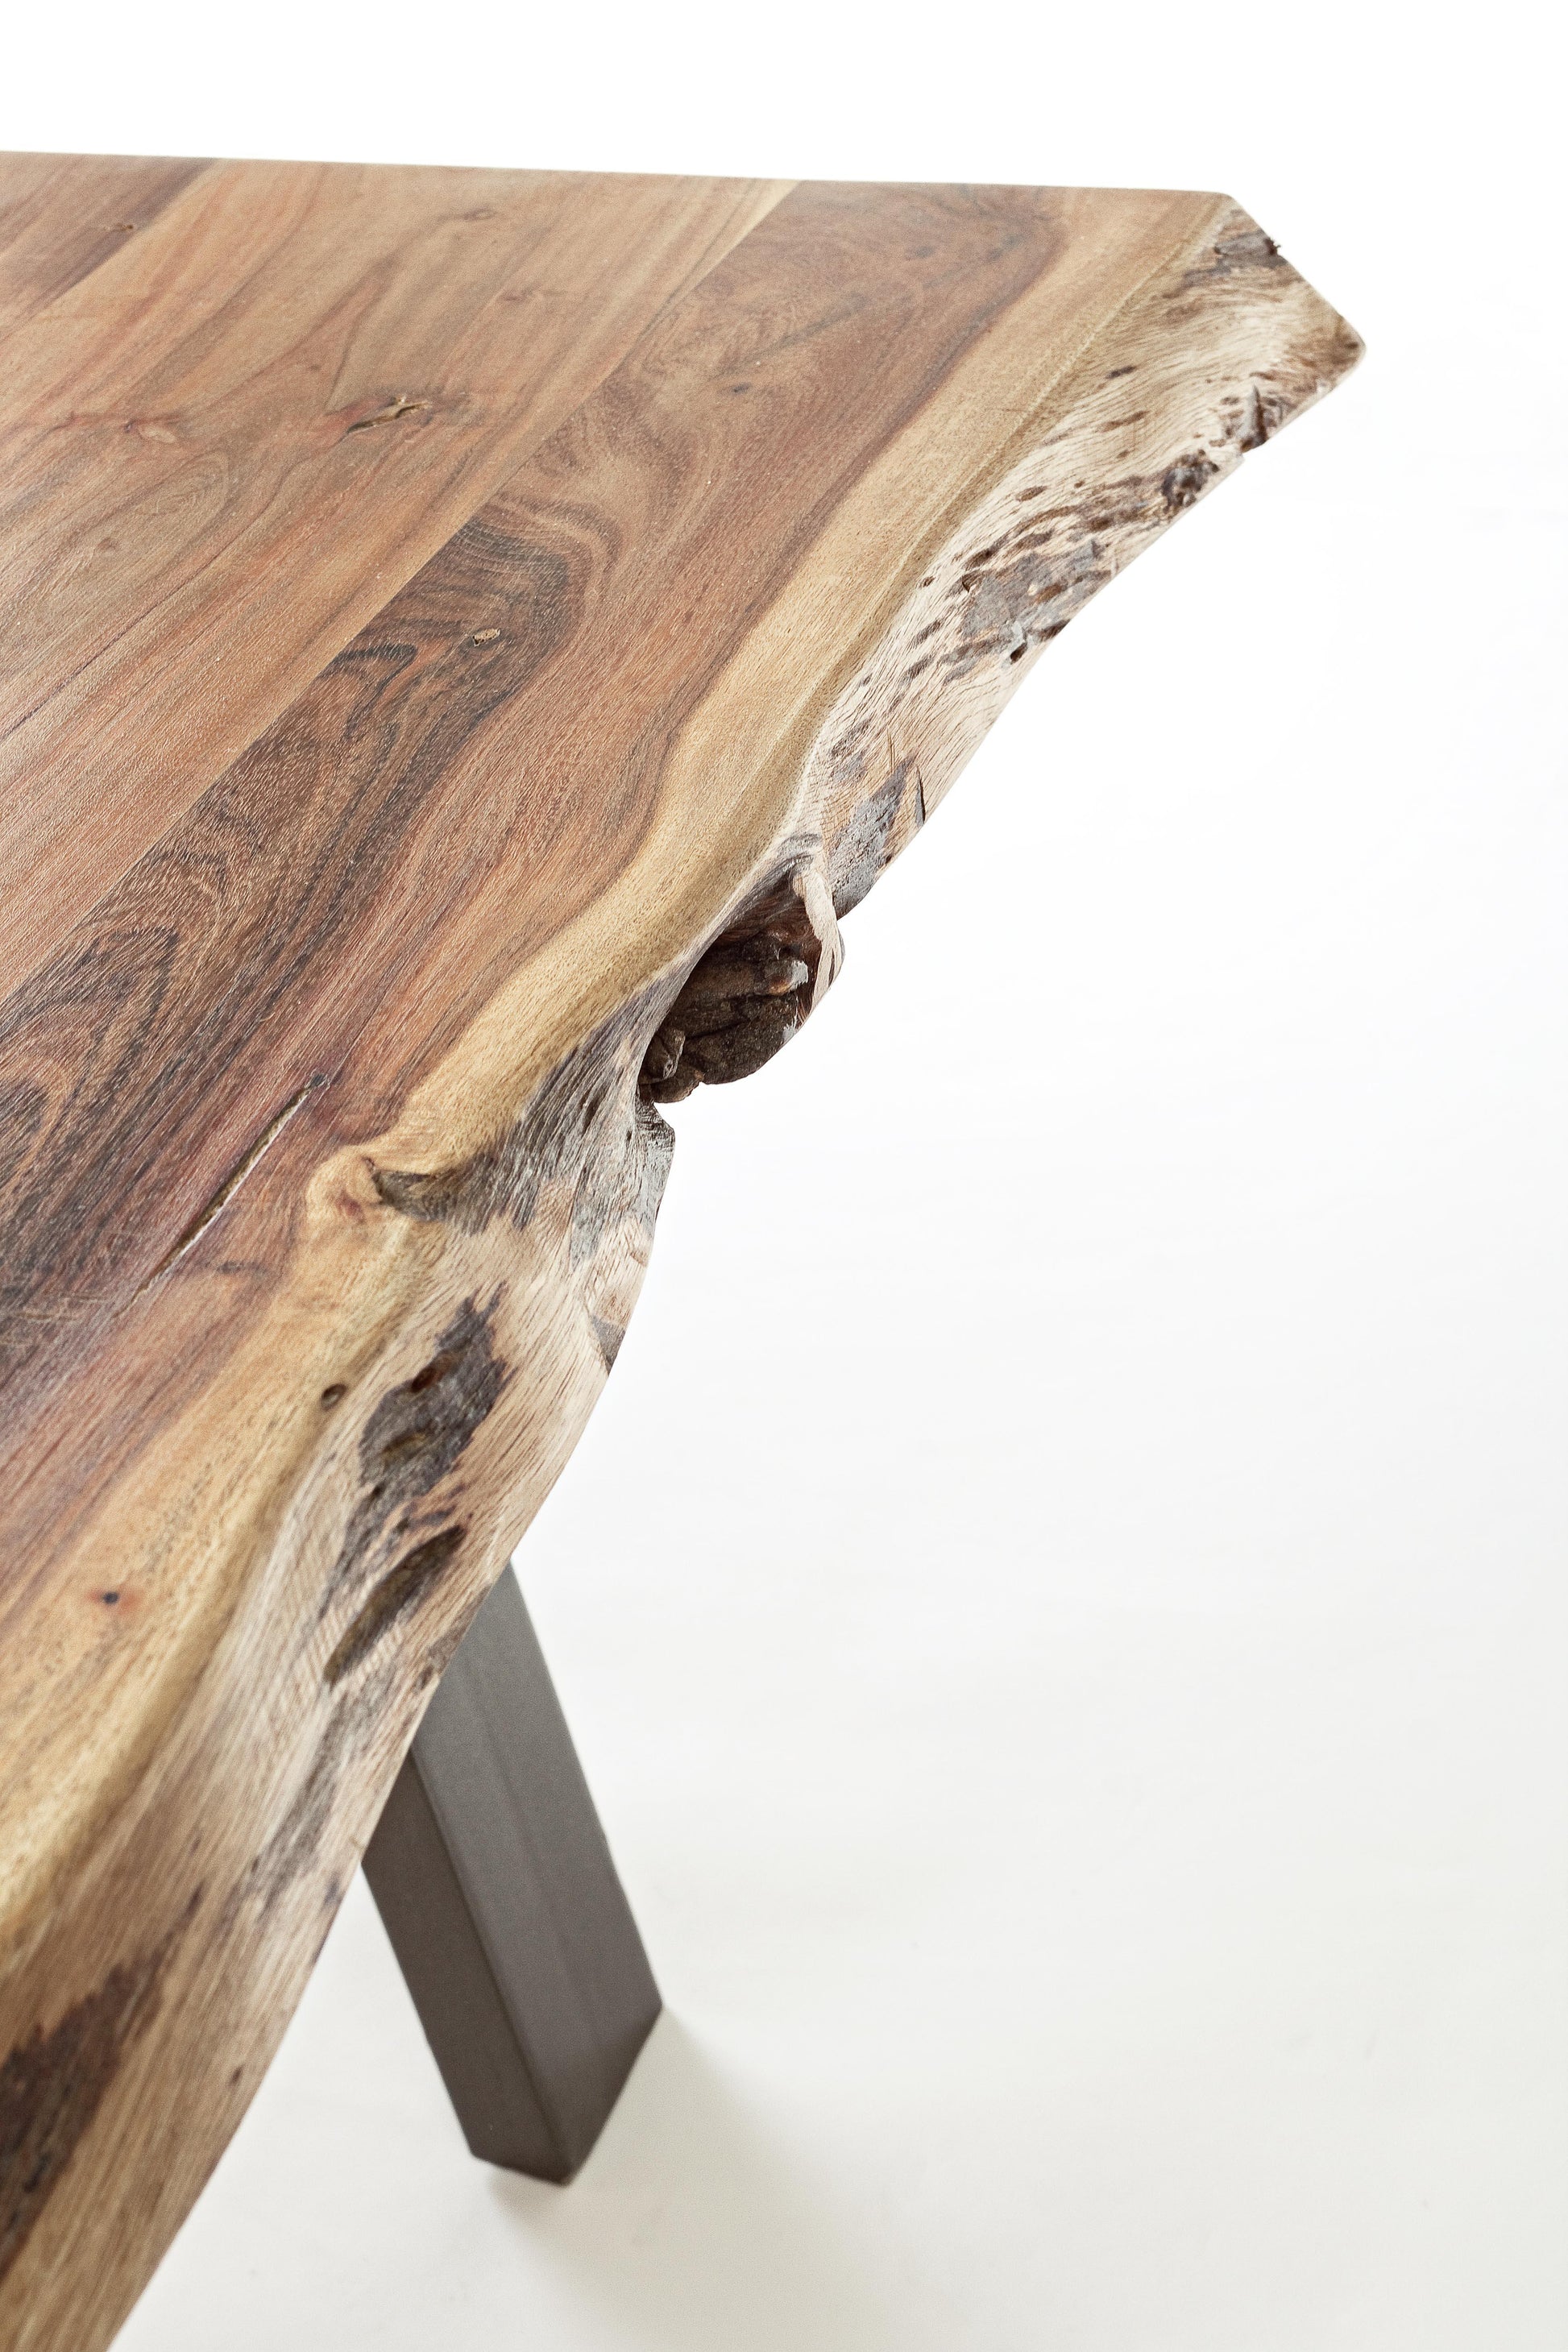 Tavolino industrial in legno massello con bordi irregolari effetto legno vivo - 115X65 - lapagoda.net